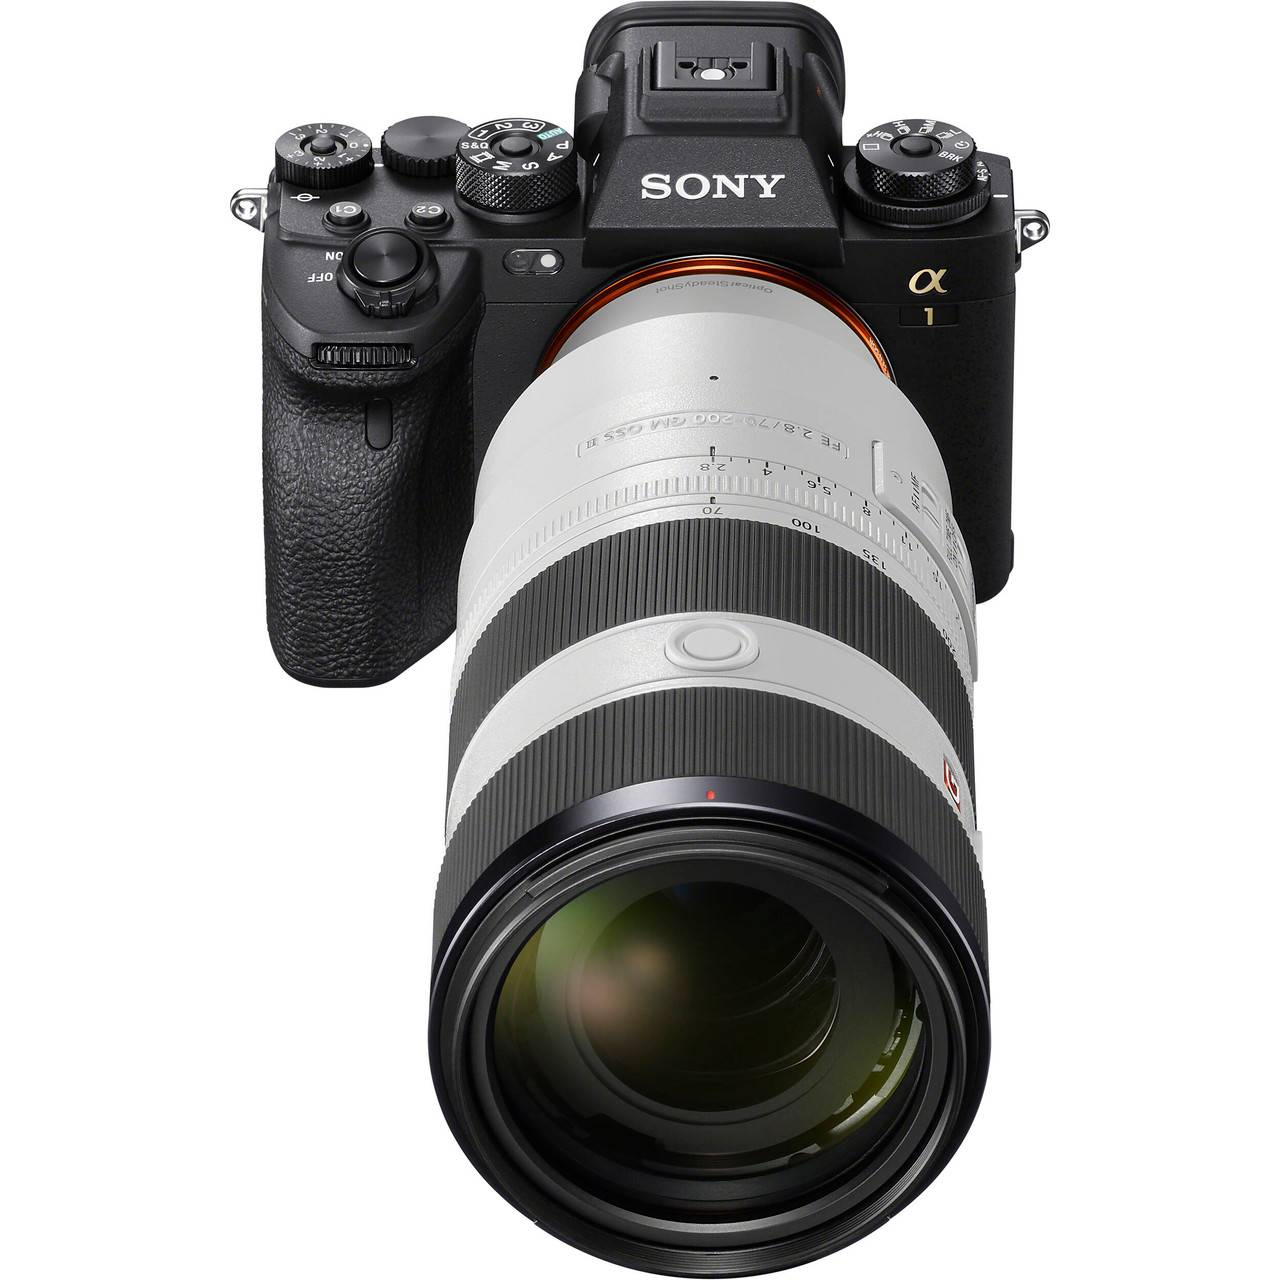 Sony FE 70-200mm F/2.8 GM OSS II Lens Review